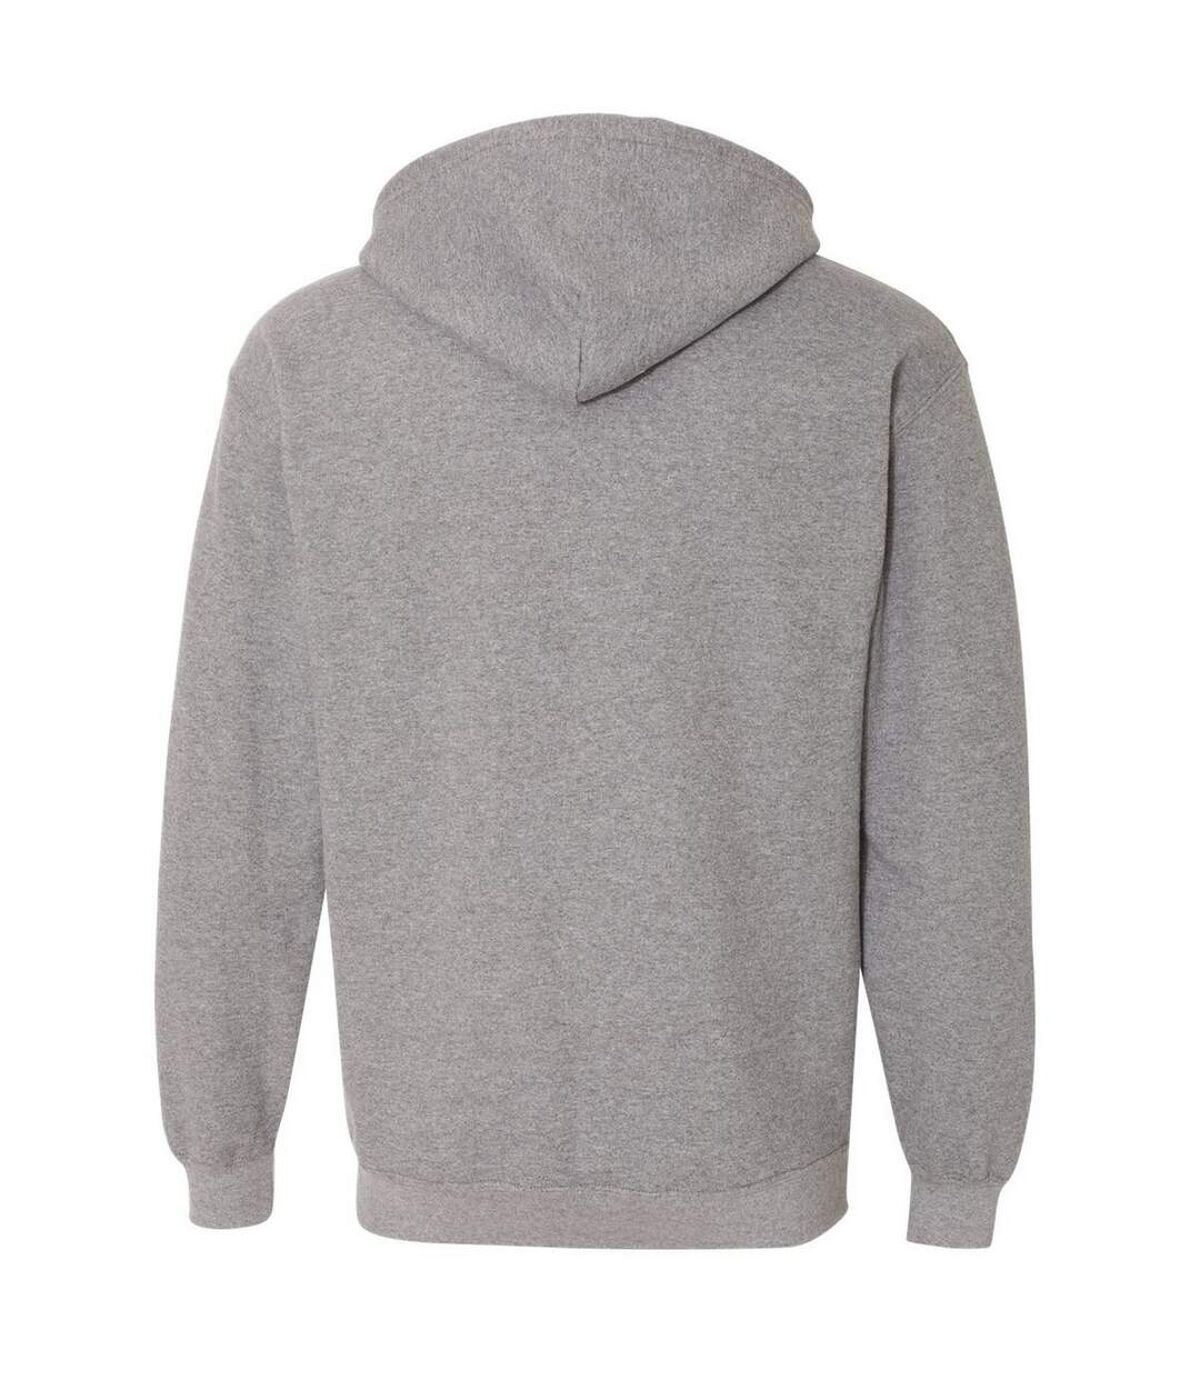 Gildan Heavy Blend Unisex Adult Full Zip Hooded Sweatshirt Top (Graphite Heather)